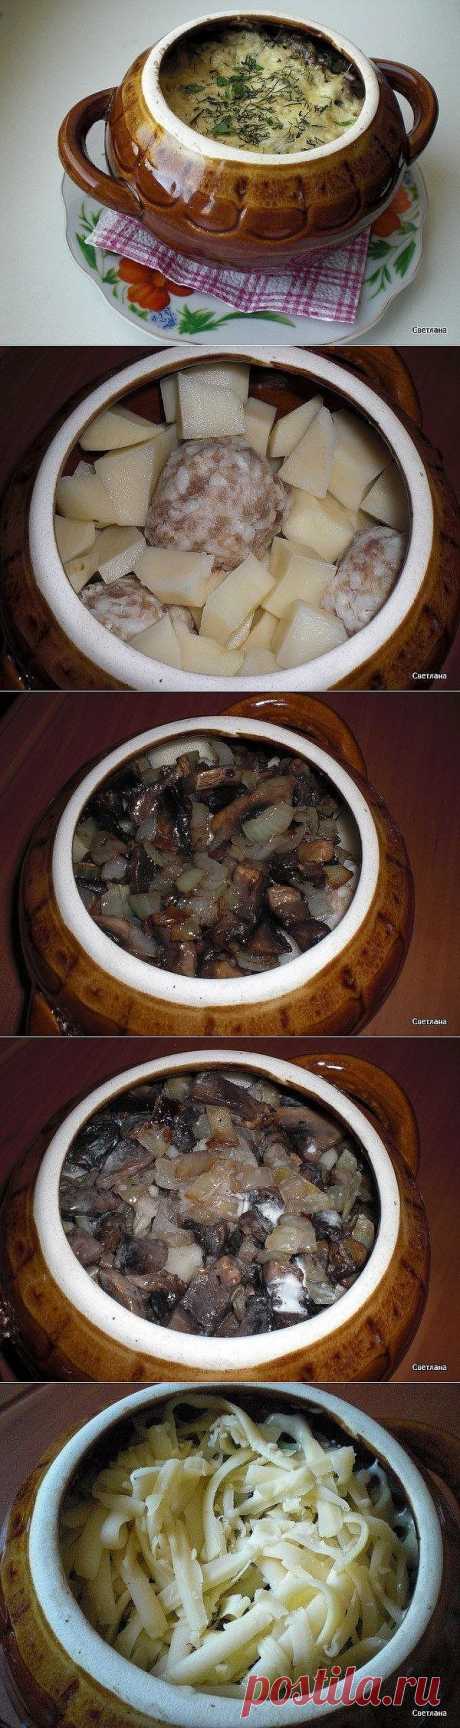 Фрикадельки с картошкой и грибами под сыром - рецепт и способ приготовления, ингридиенты | sloosh